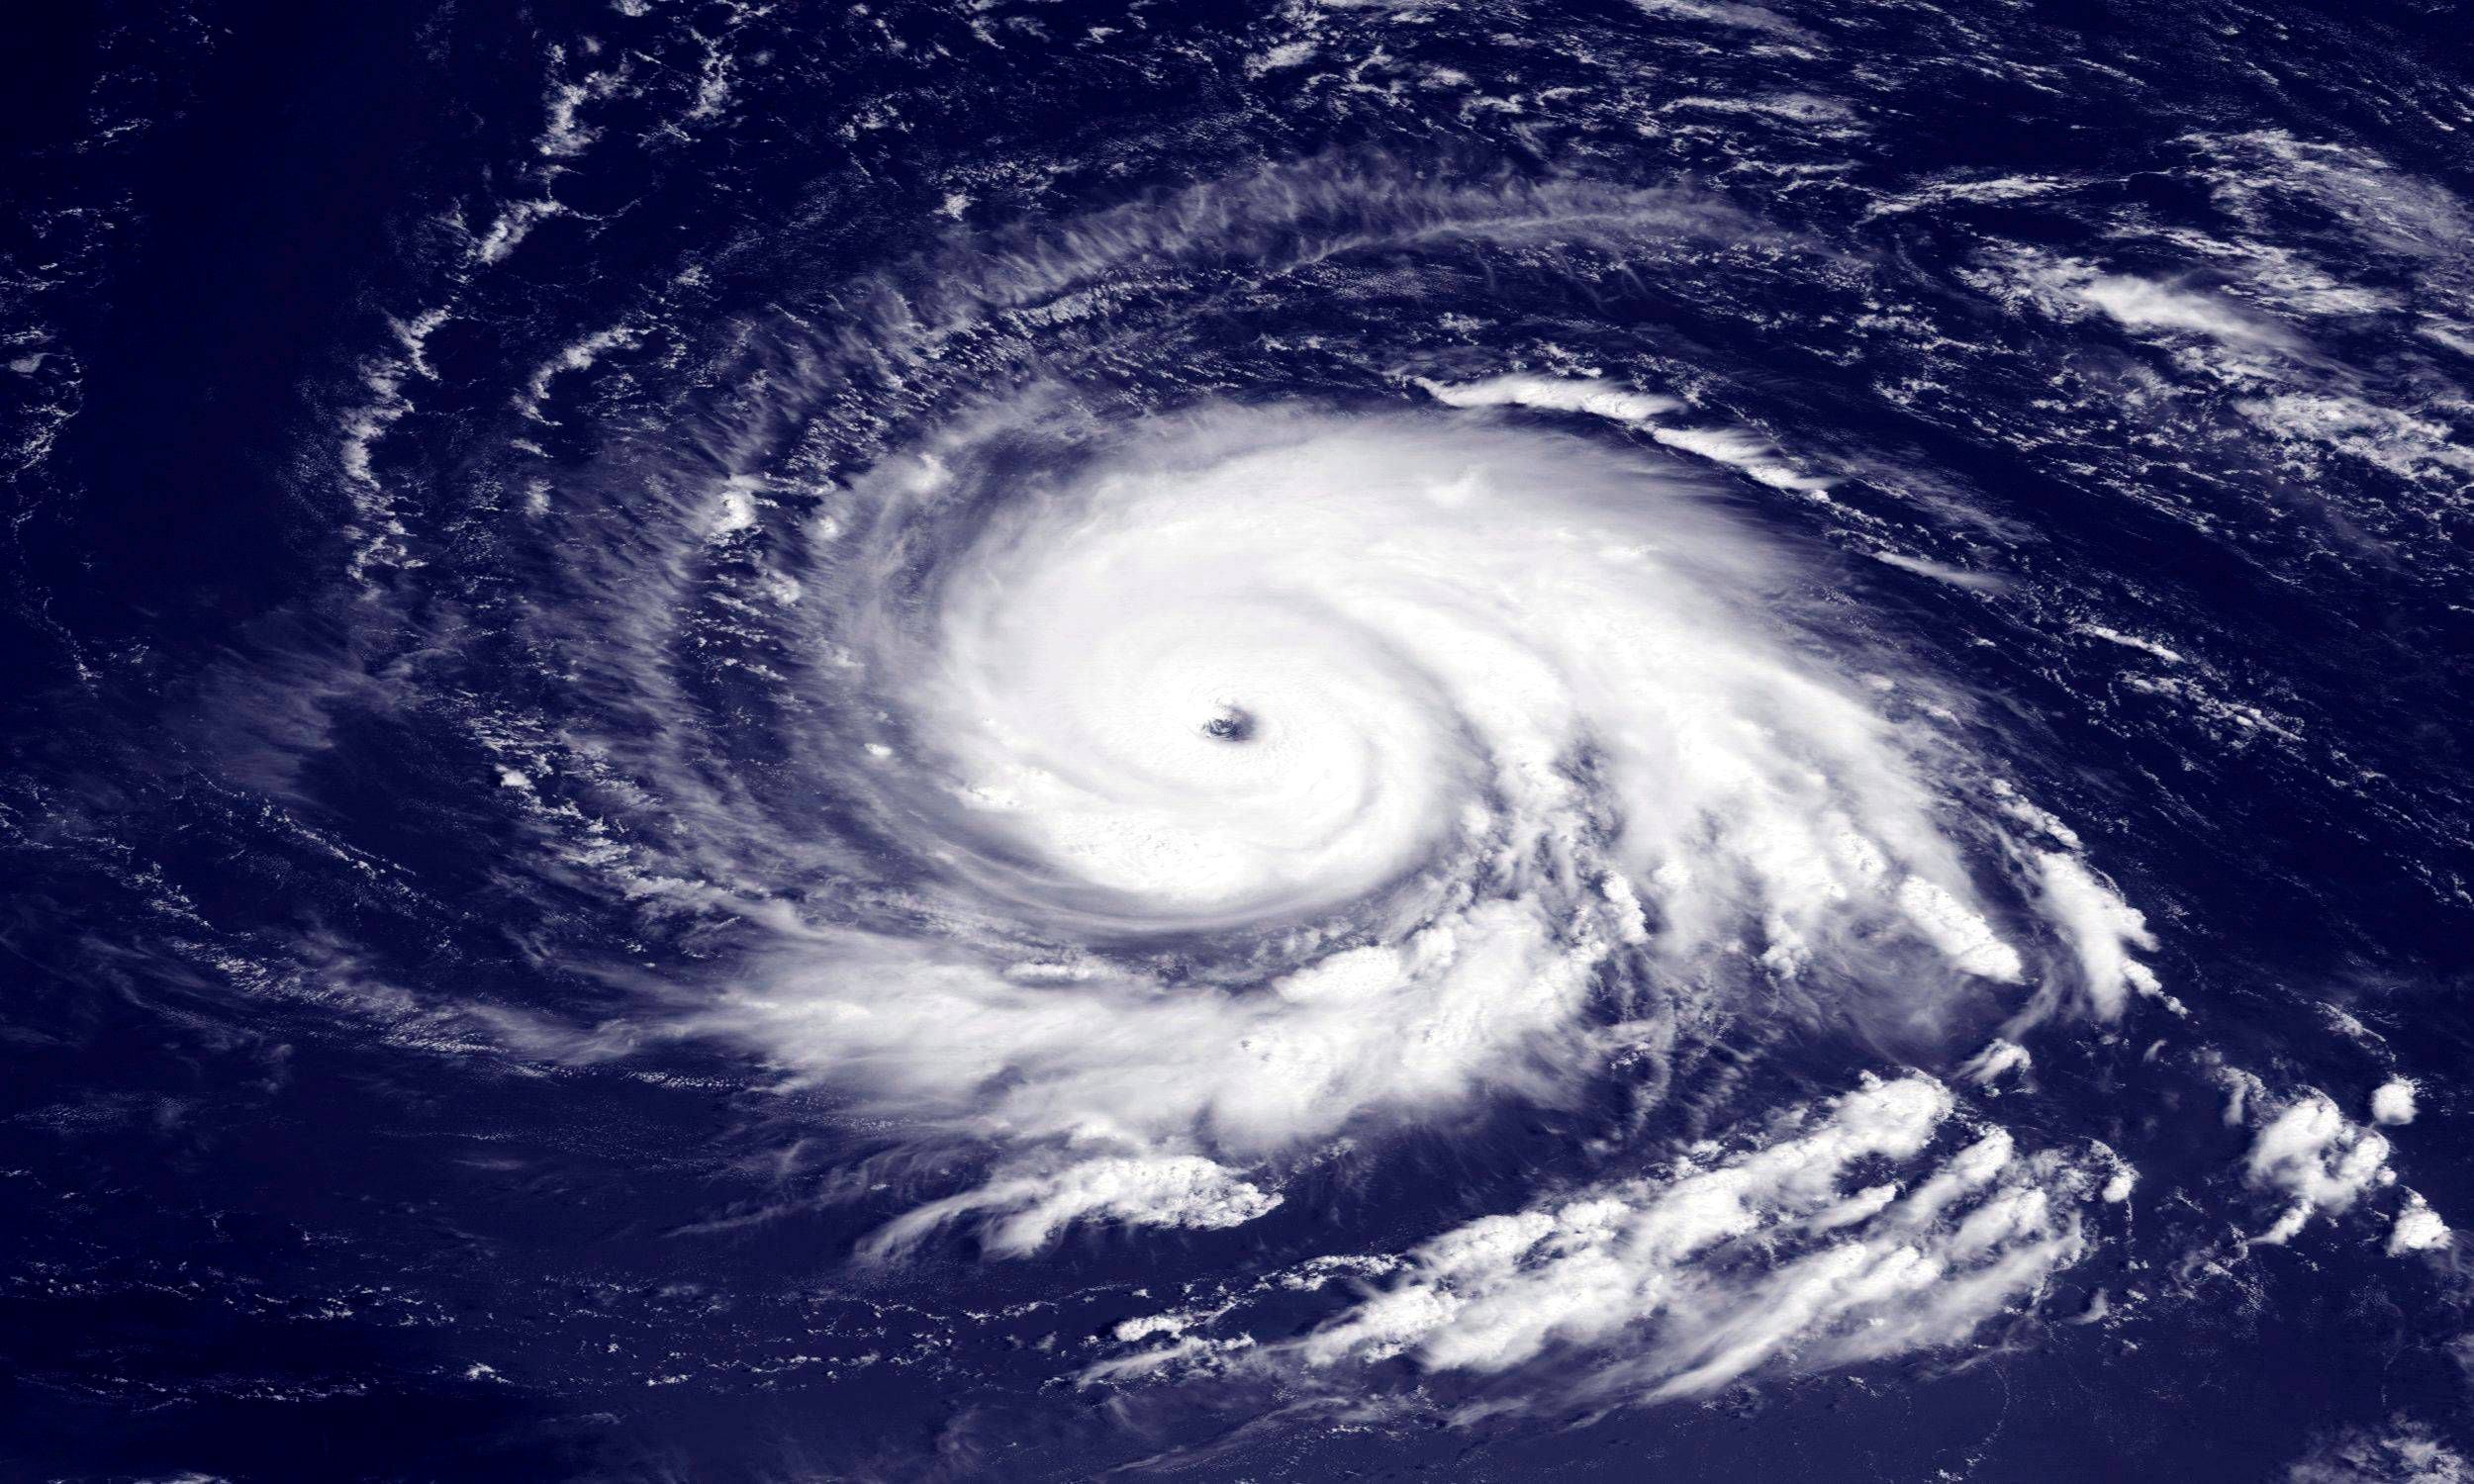 accuweather pronostica una “explosiva” temporada ciclónica en el atlántico